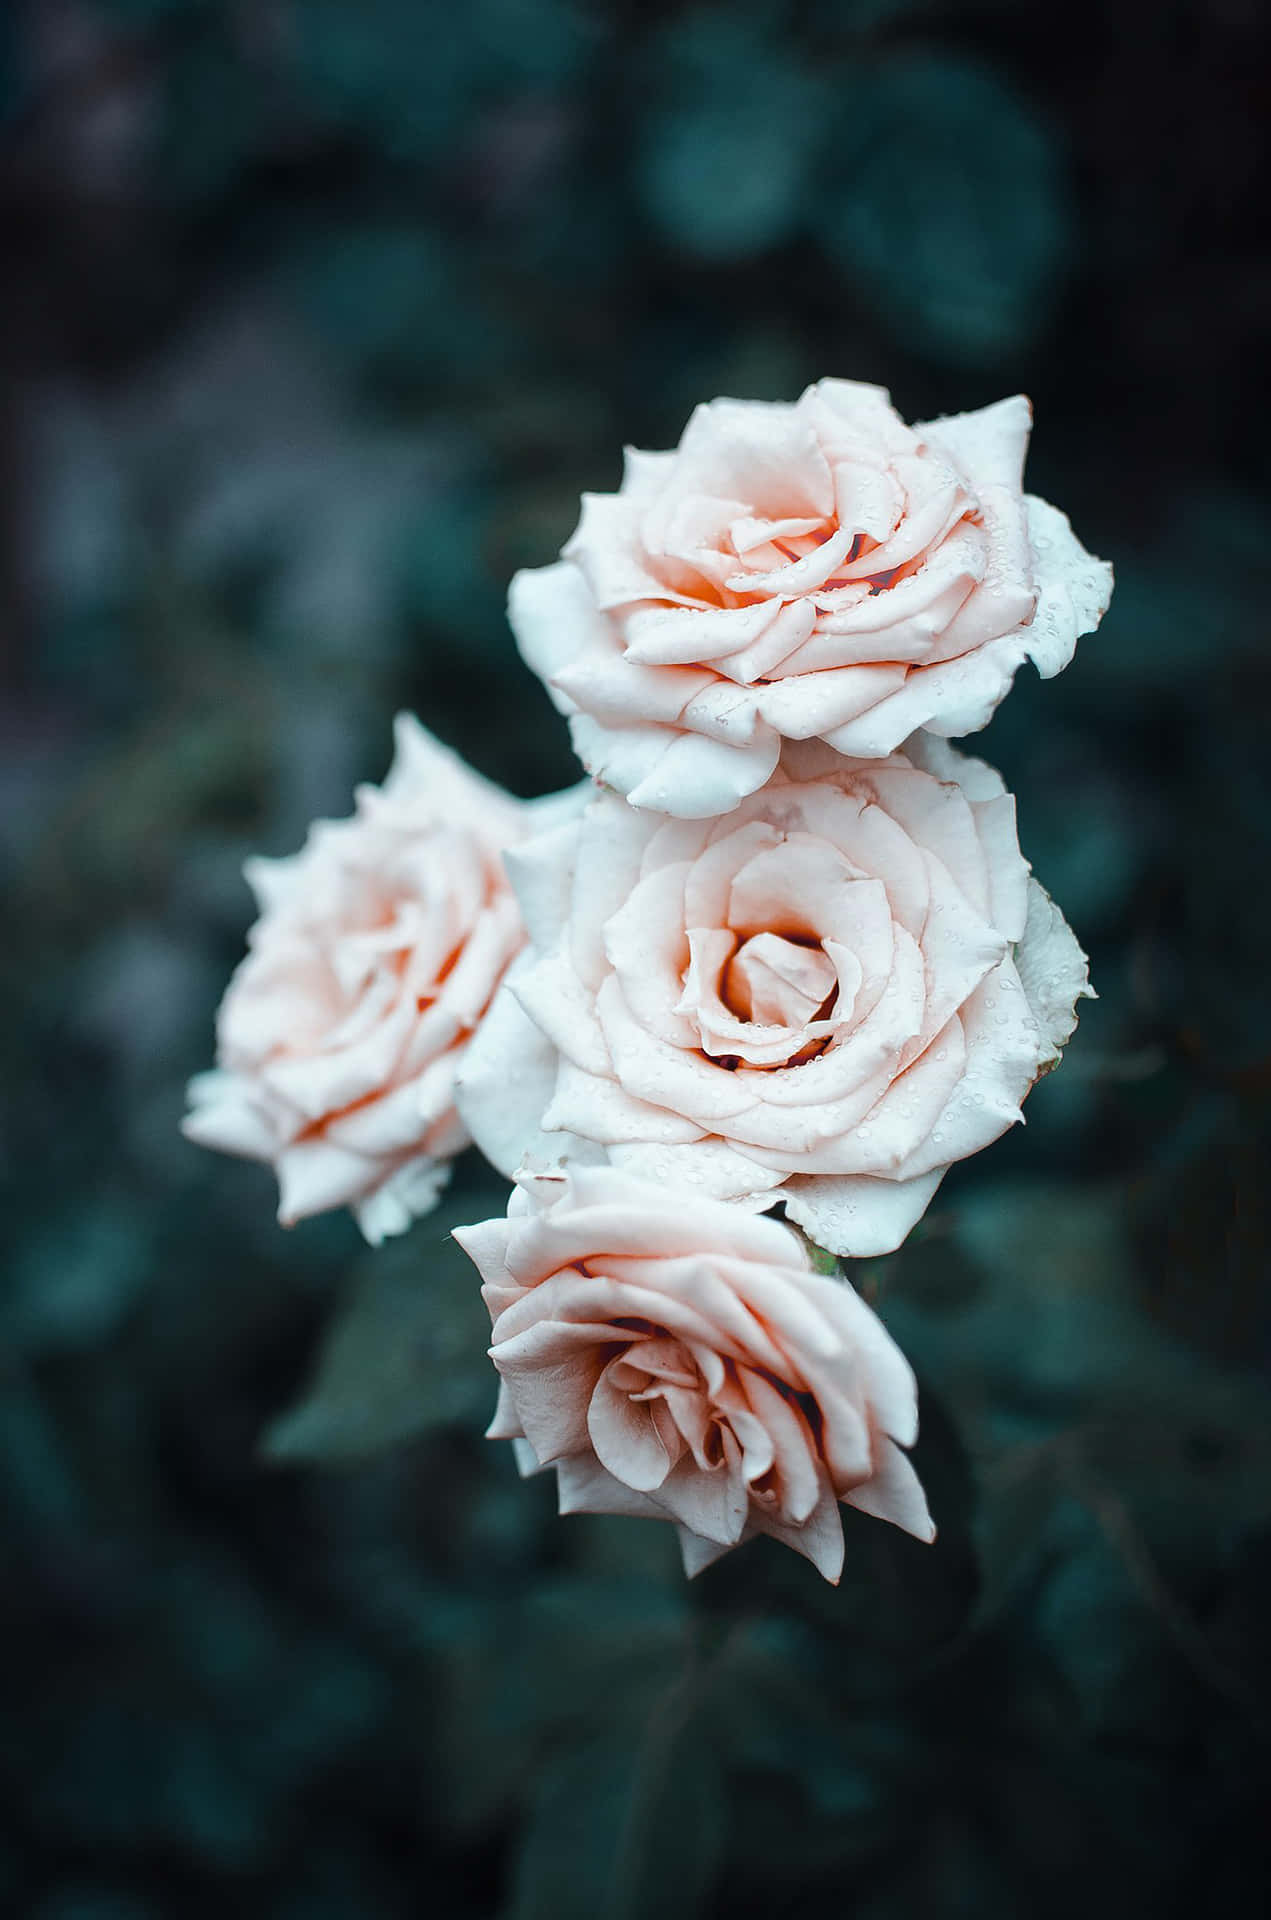 Umdeslumbrante Buquê De Rosas Brancas.